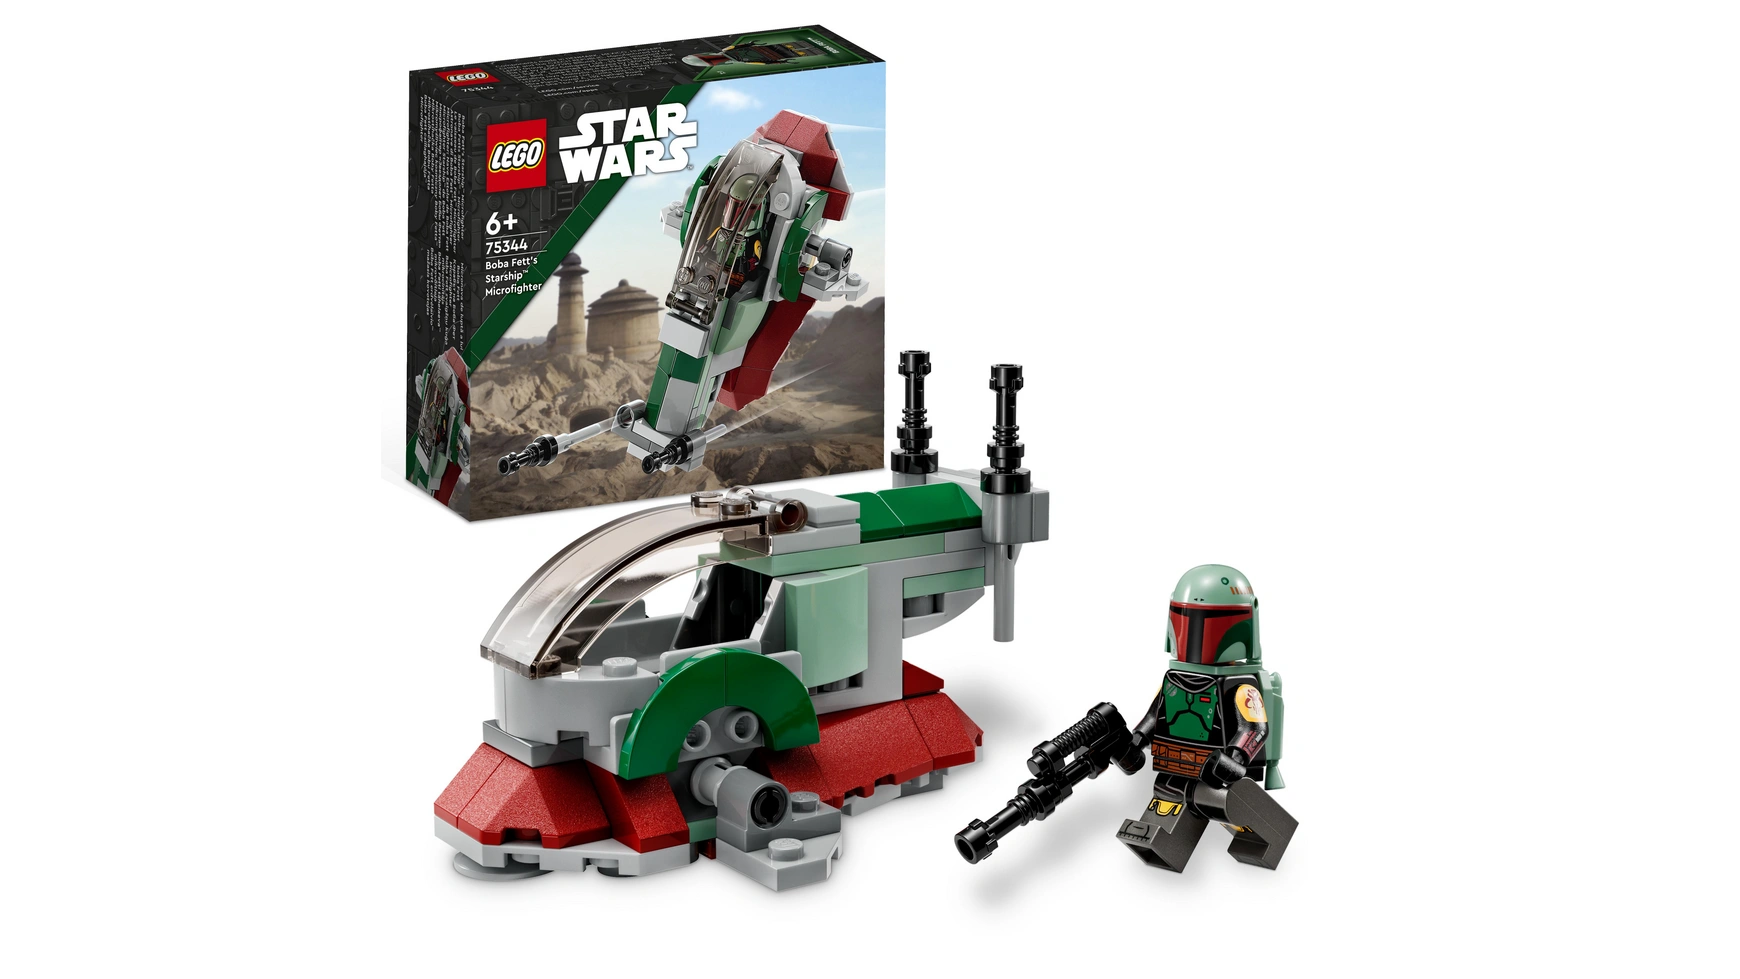 Lego Star Wars Звездный корабль Бобы Фетта набор микроистребителей конструктор лезвие бритвы 75292 lego star wars